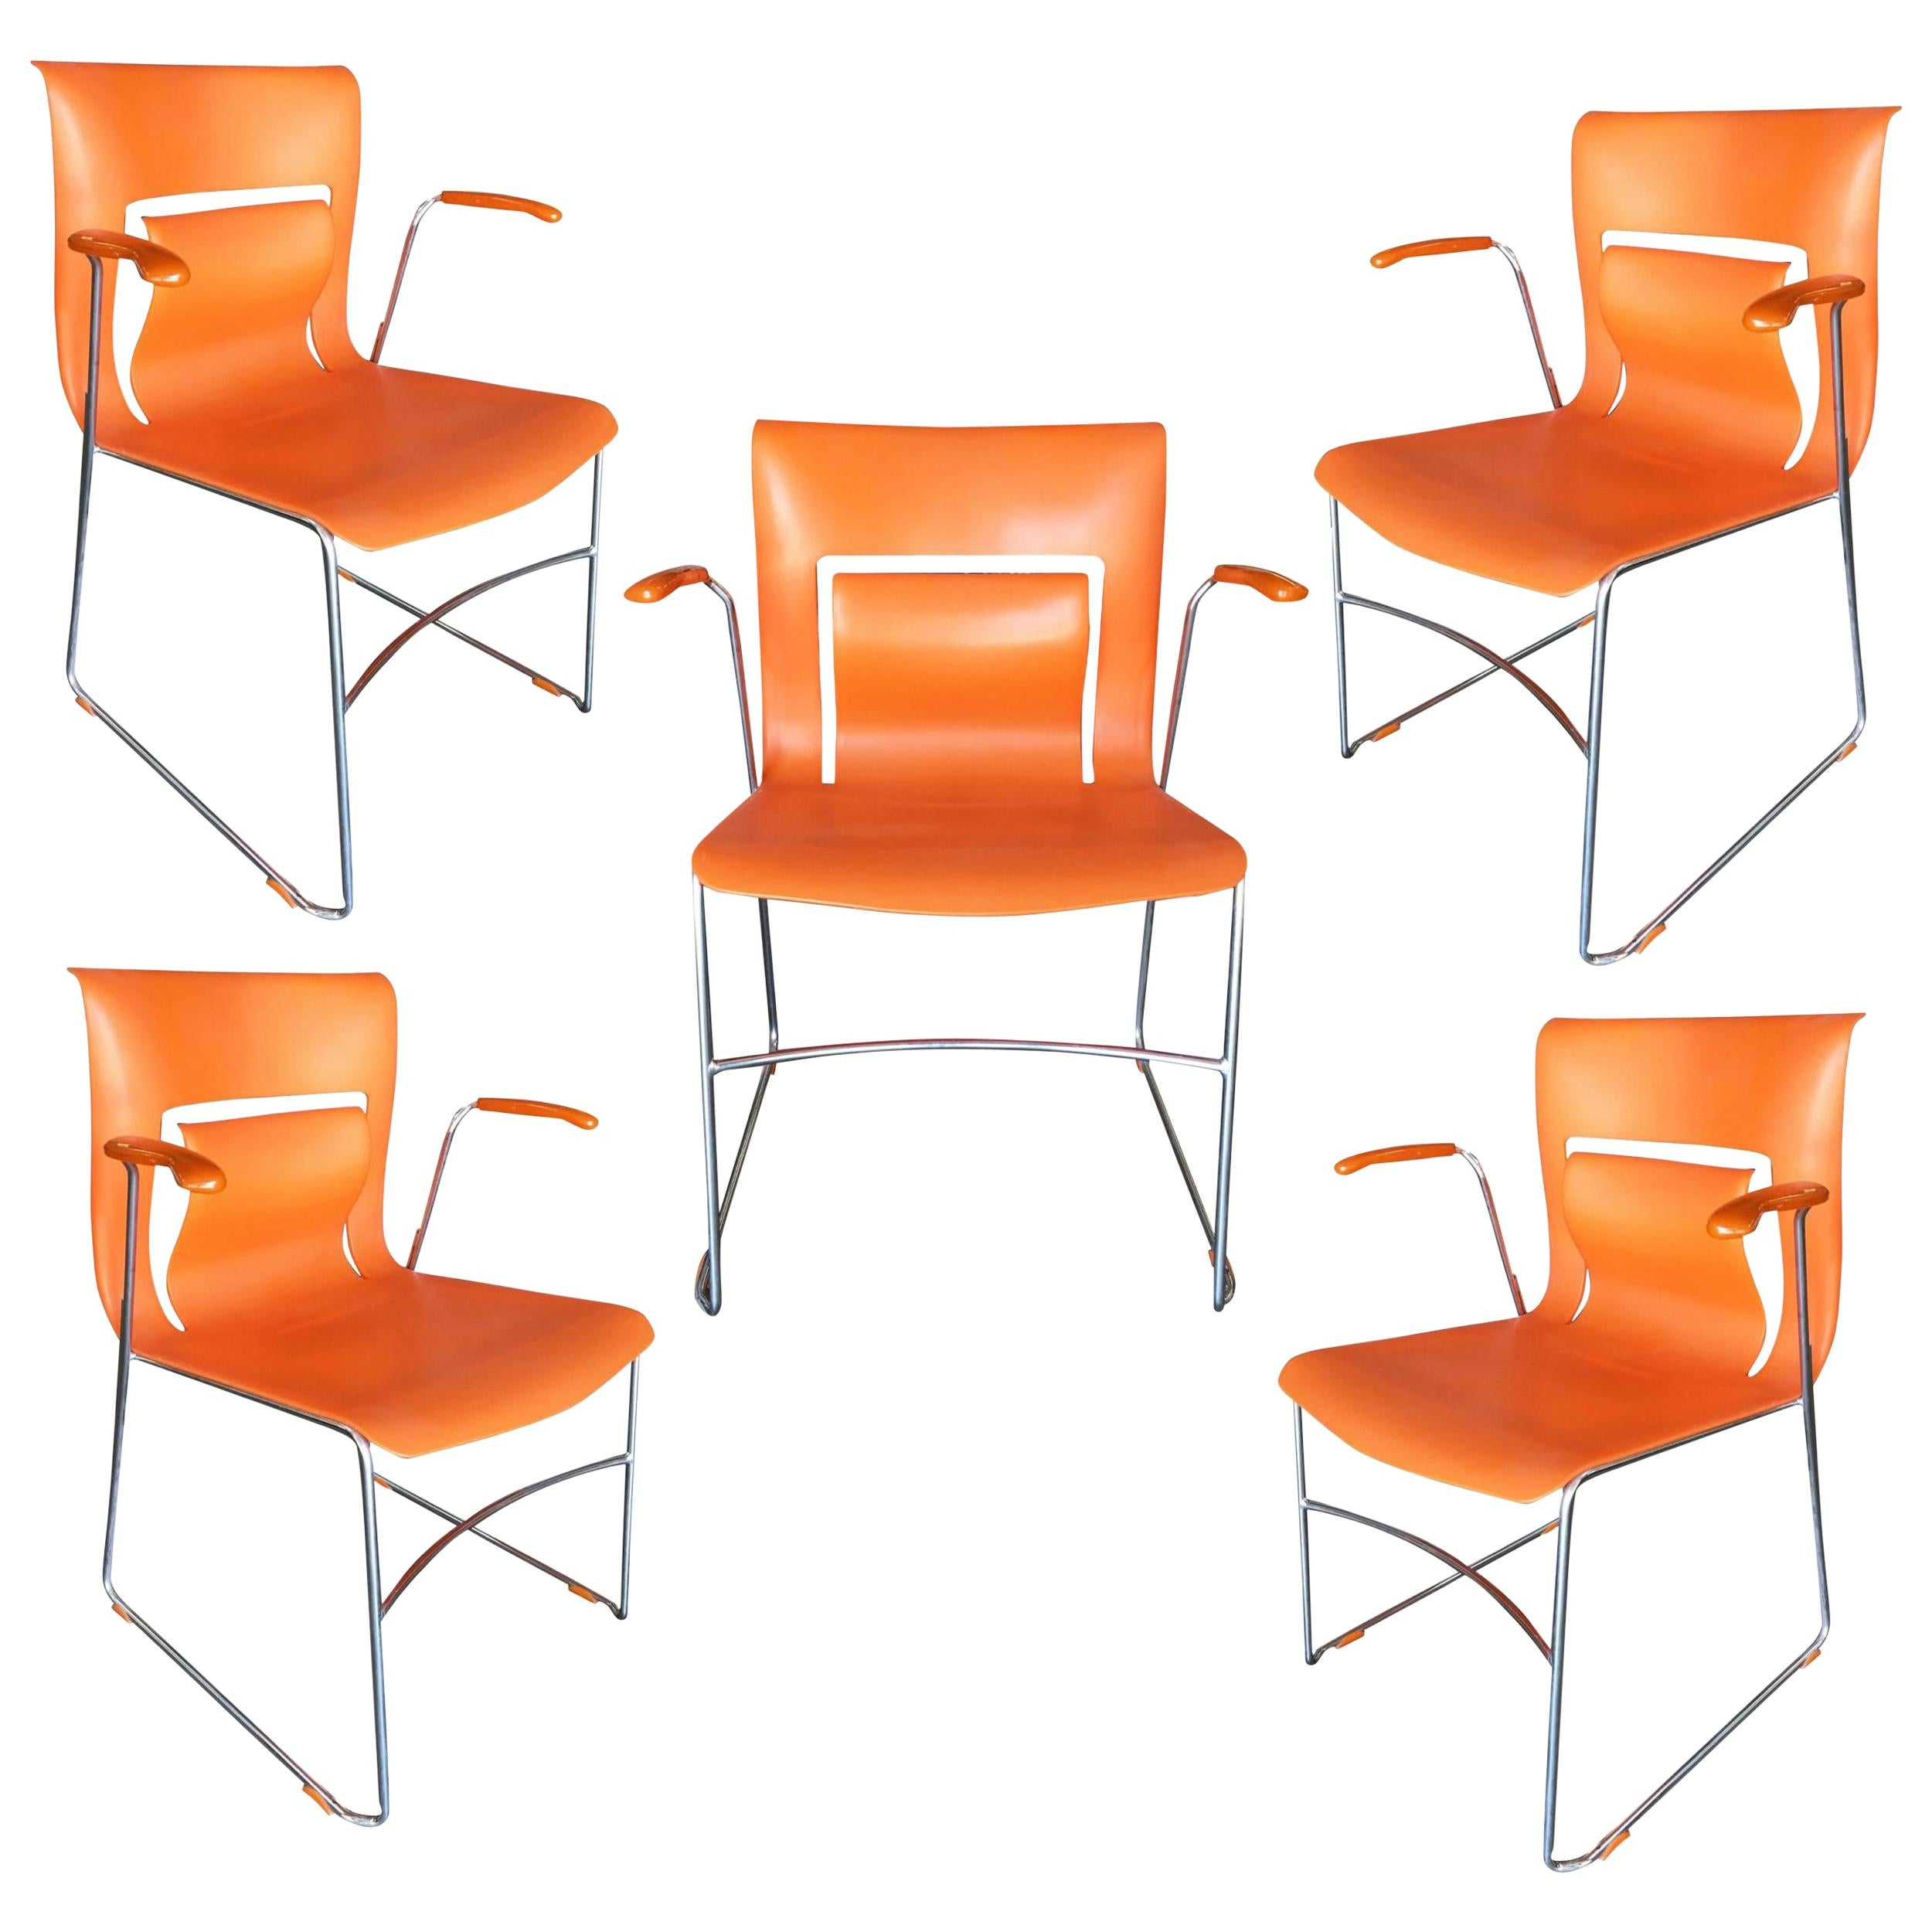 Ensembles, rare fauteuil Orange Stylex « Rythm » de Sva Cvek, lot de 5